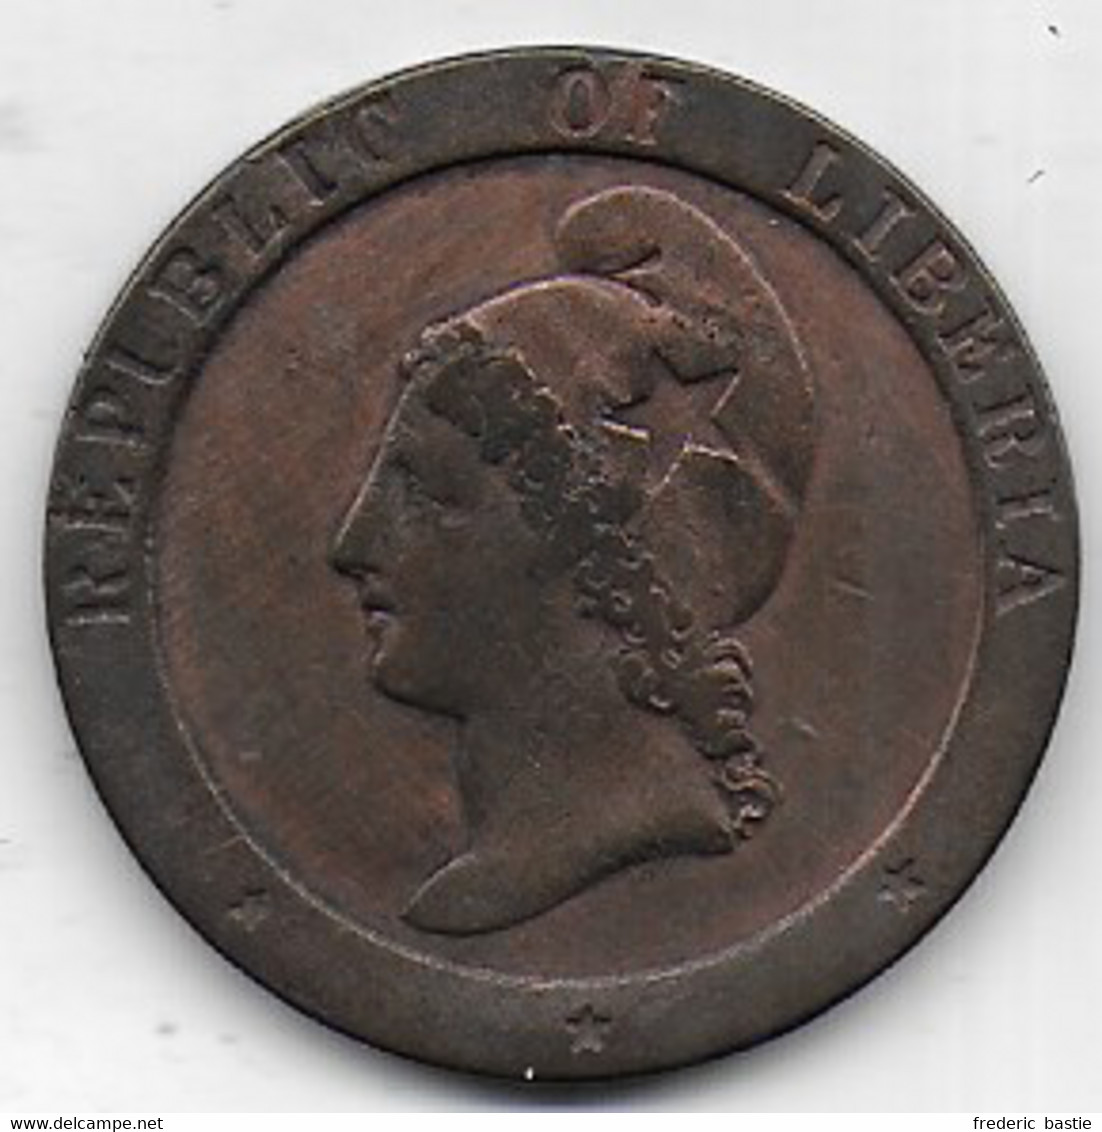 LIBERIA  -   2 Cents  1862 - Liberia